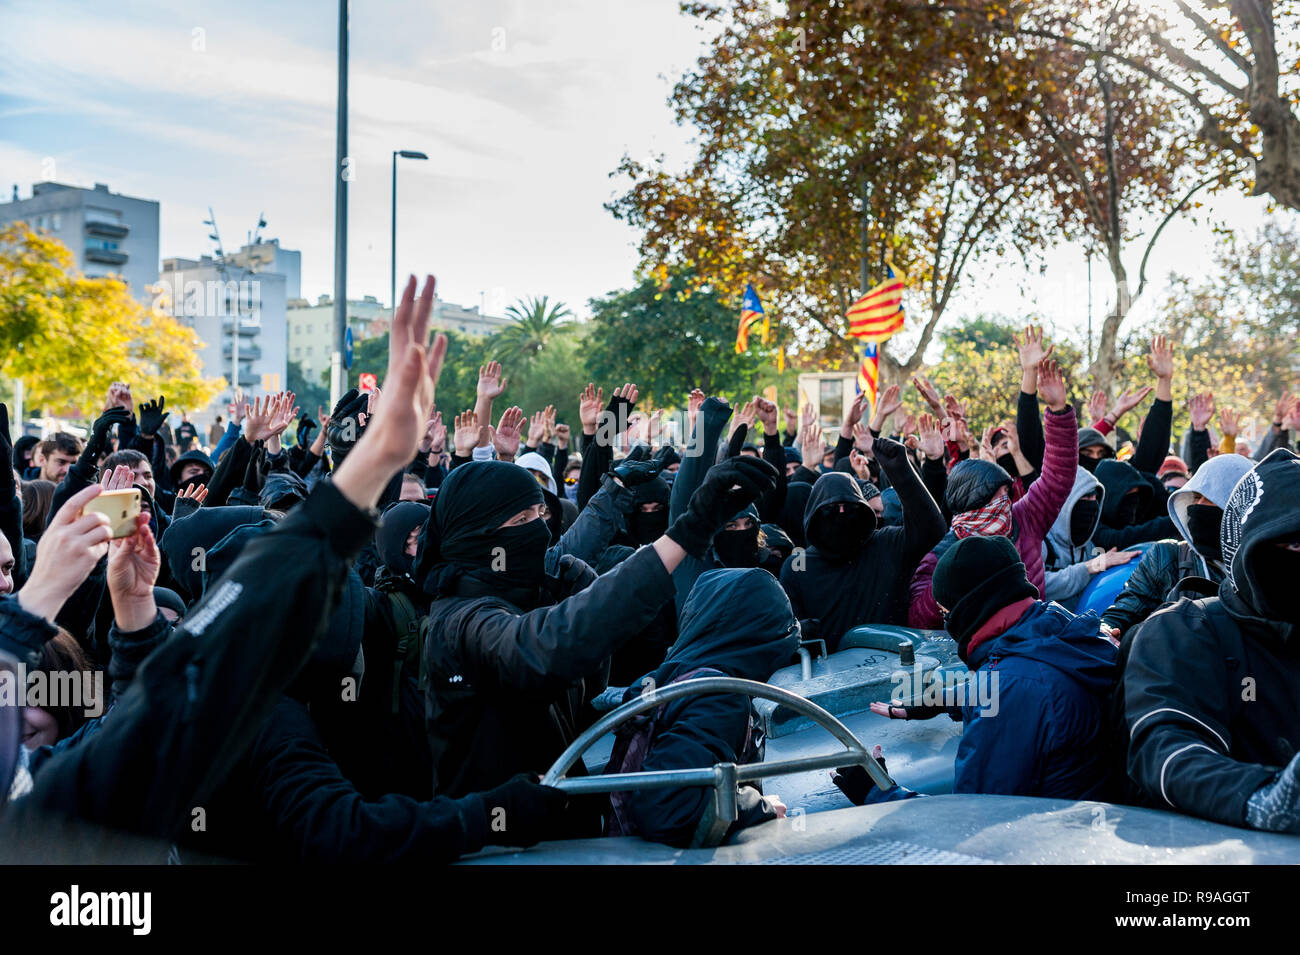 Barcelona, España, 21 de diciembre de 2018. Activistas Catalna, CDR, enfrentamiento con la policía durante una reunión del gabinete en el palacio de la Lonja, atacándolos con contenedores de basura: davide bonaldo crédito/Alamy Live News Foto de stock